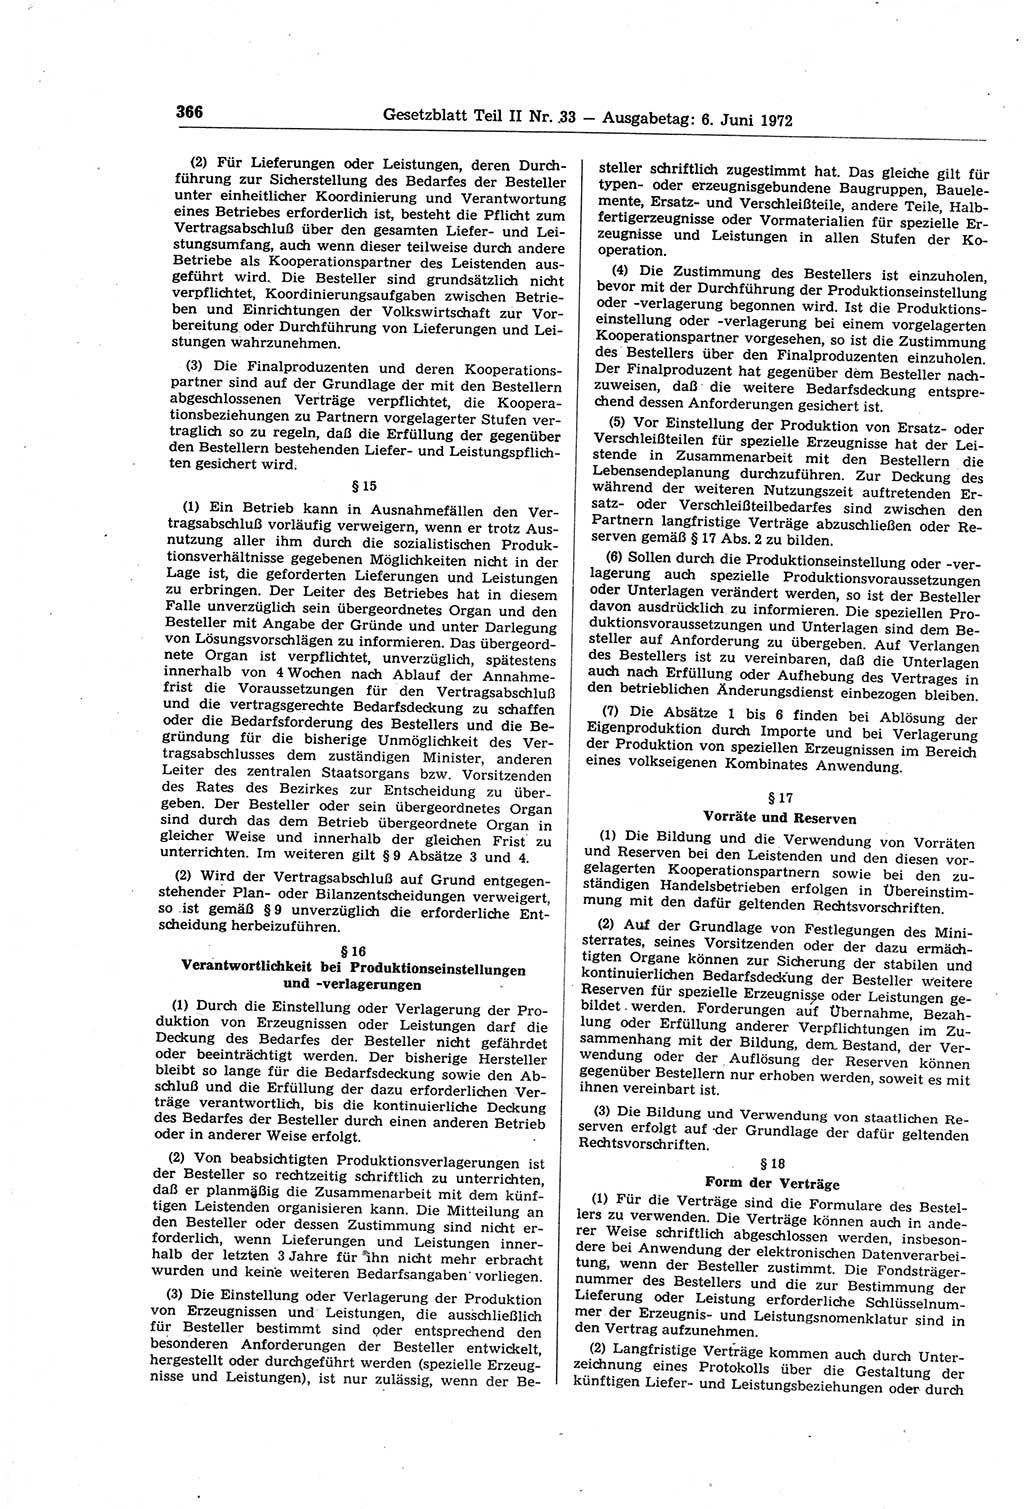 Gesetzblatt (GBl.) der Deutschen Demokratischen Republik (DDR) Teil ⅠⅠ 1972, Seite 366 (GBl. DDR ⅠⅠ 1972, S. 366)